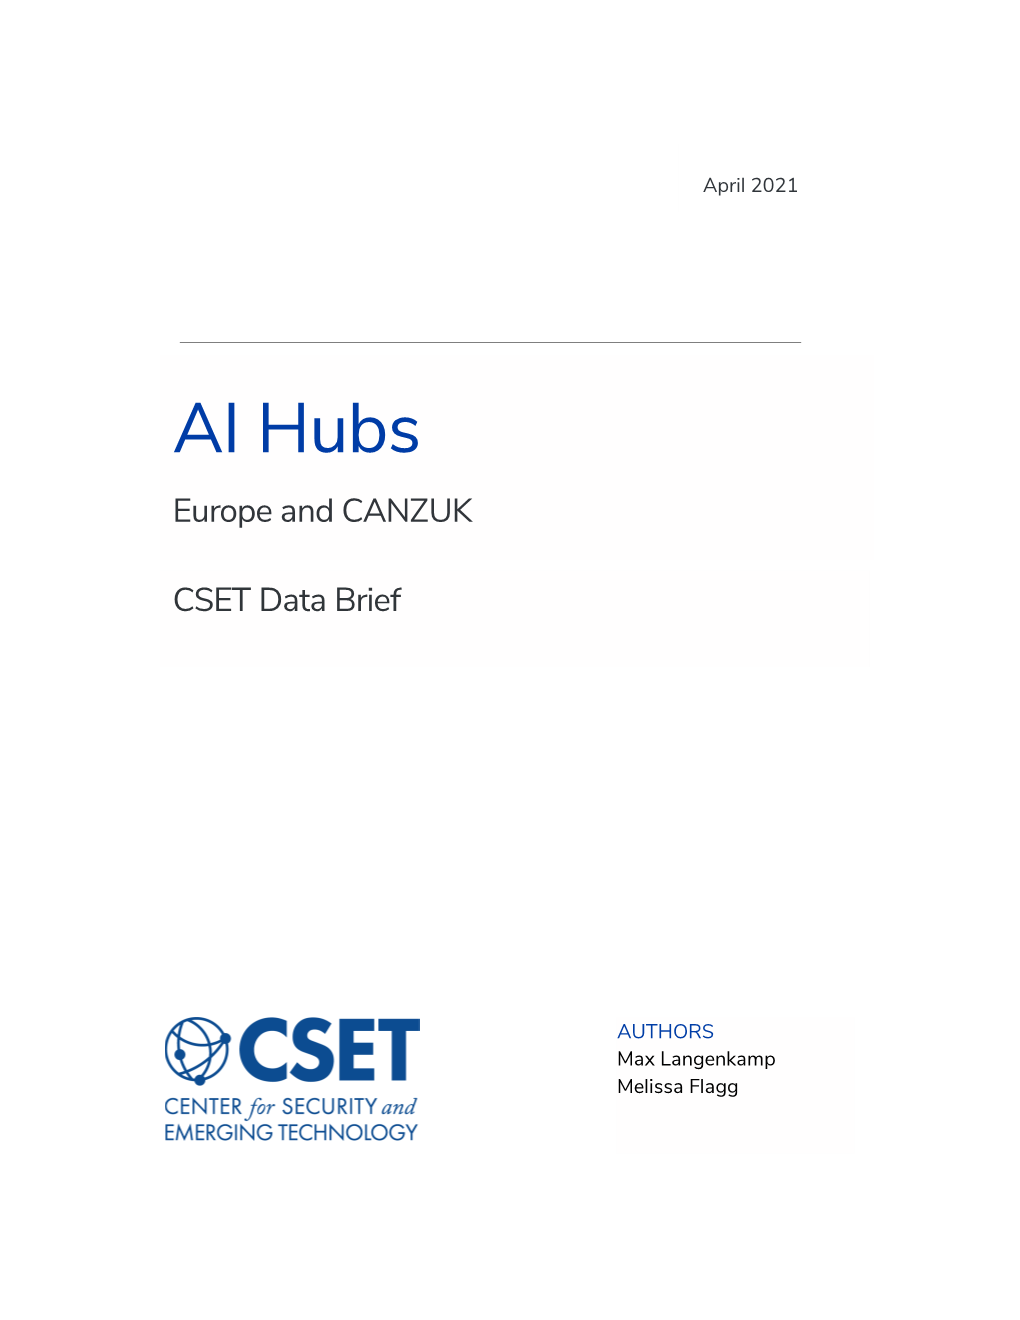 AI Hubs: Europe and CANZUK